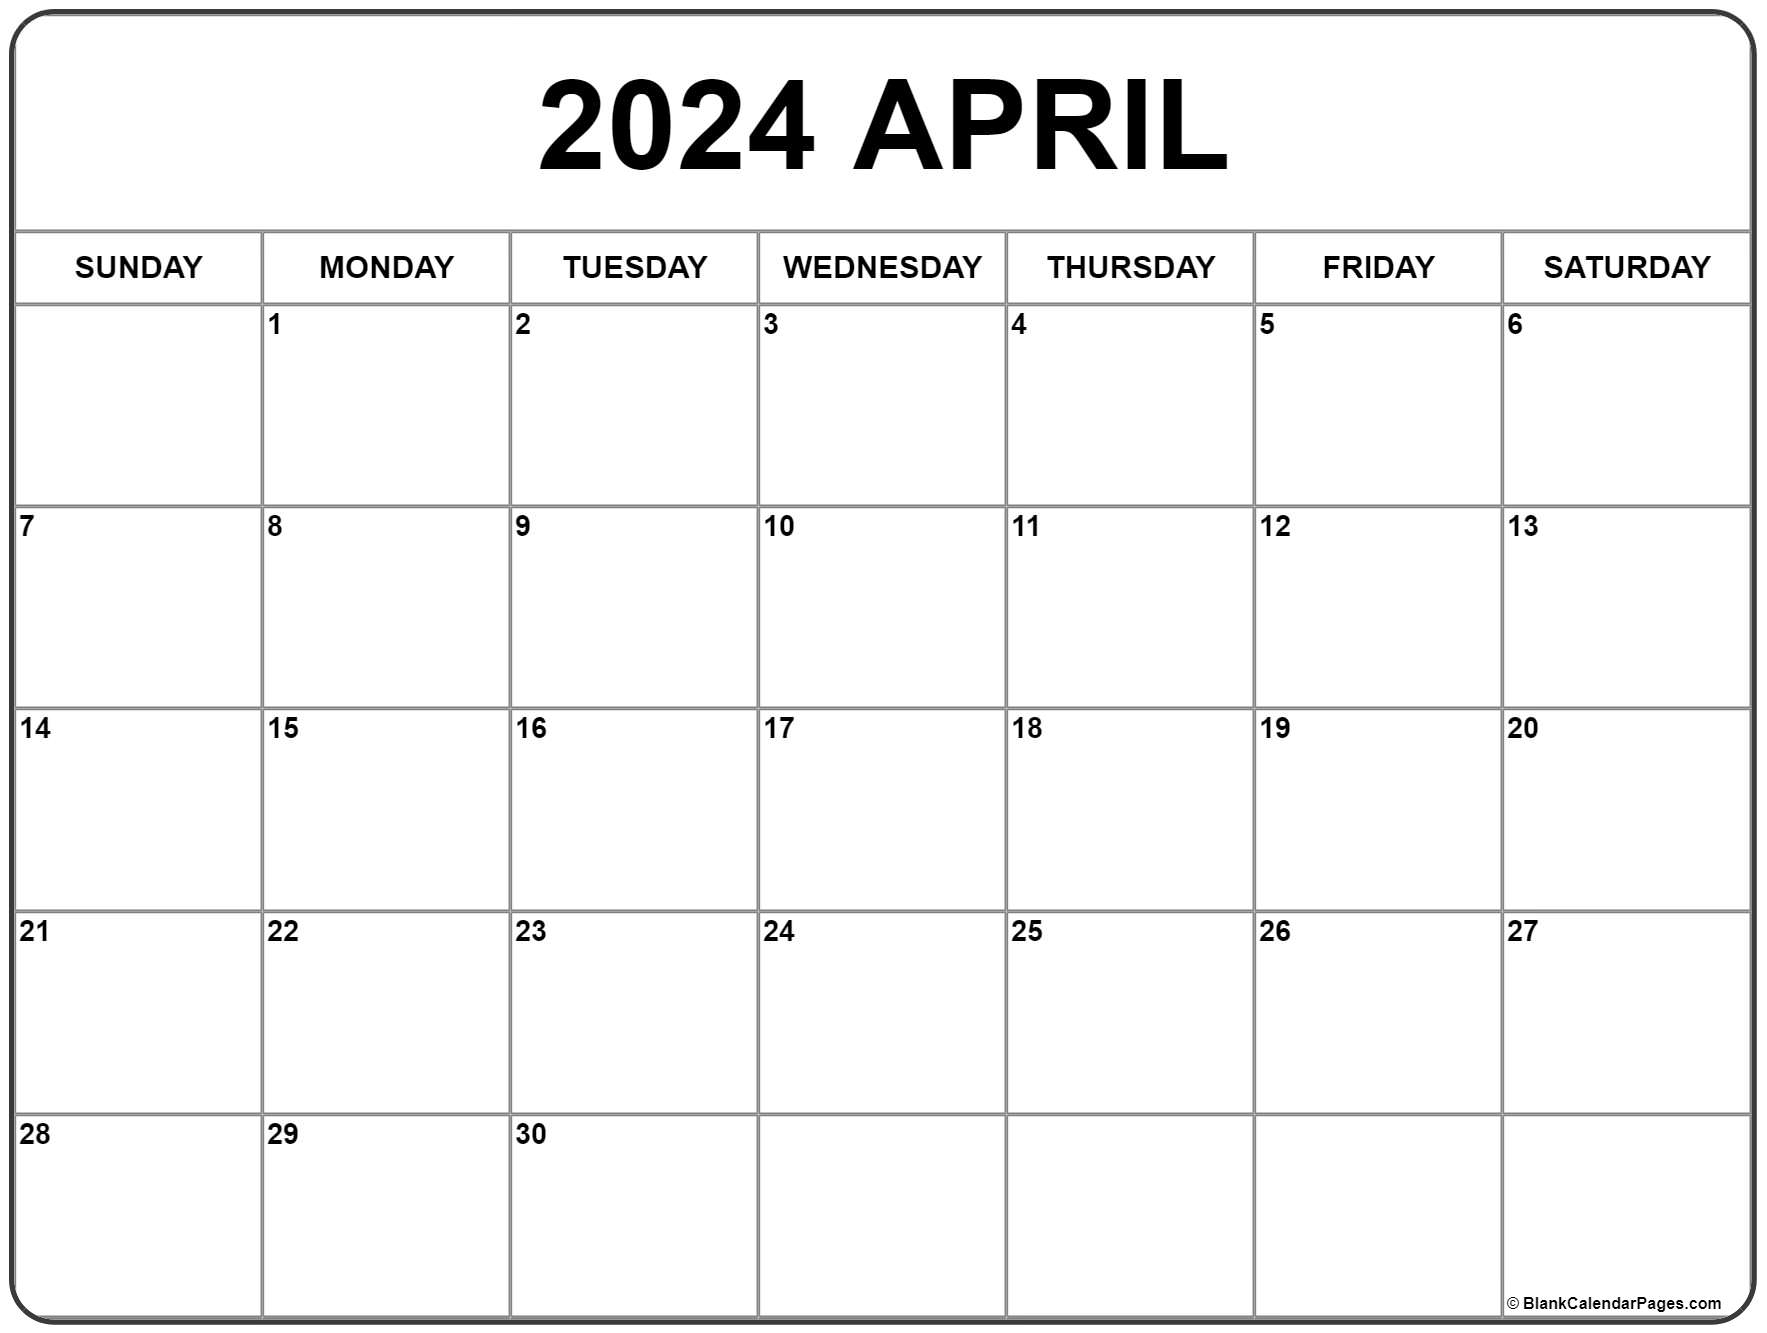 April 2024 Calendar | Free Printable Calendar for Free April Calendar Printable 2024